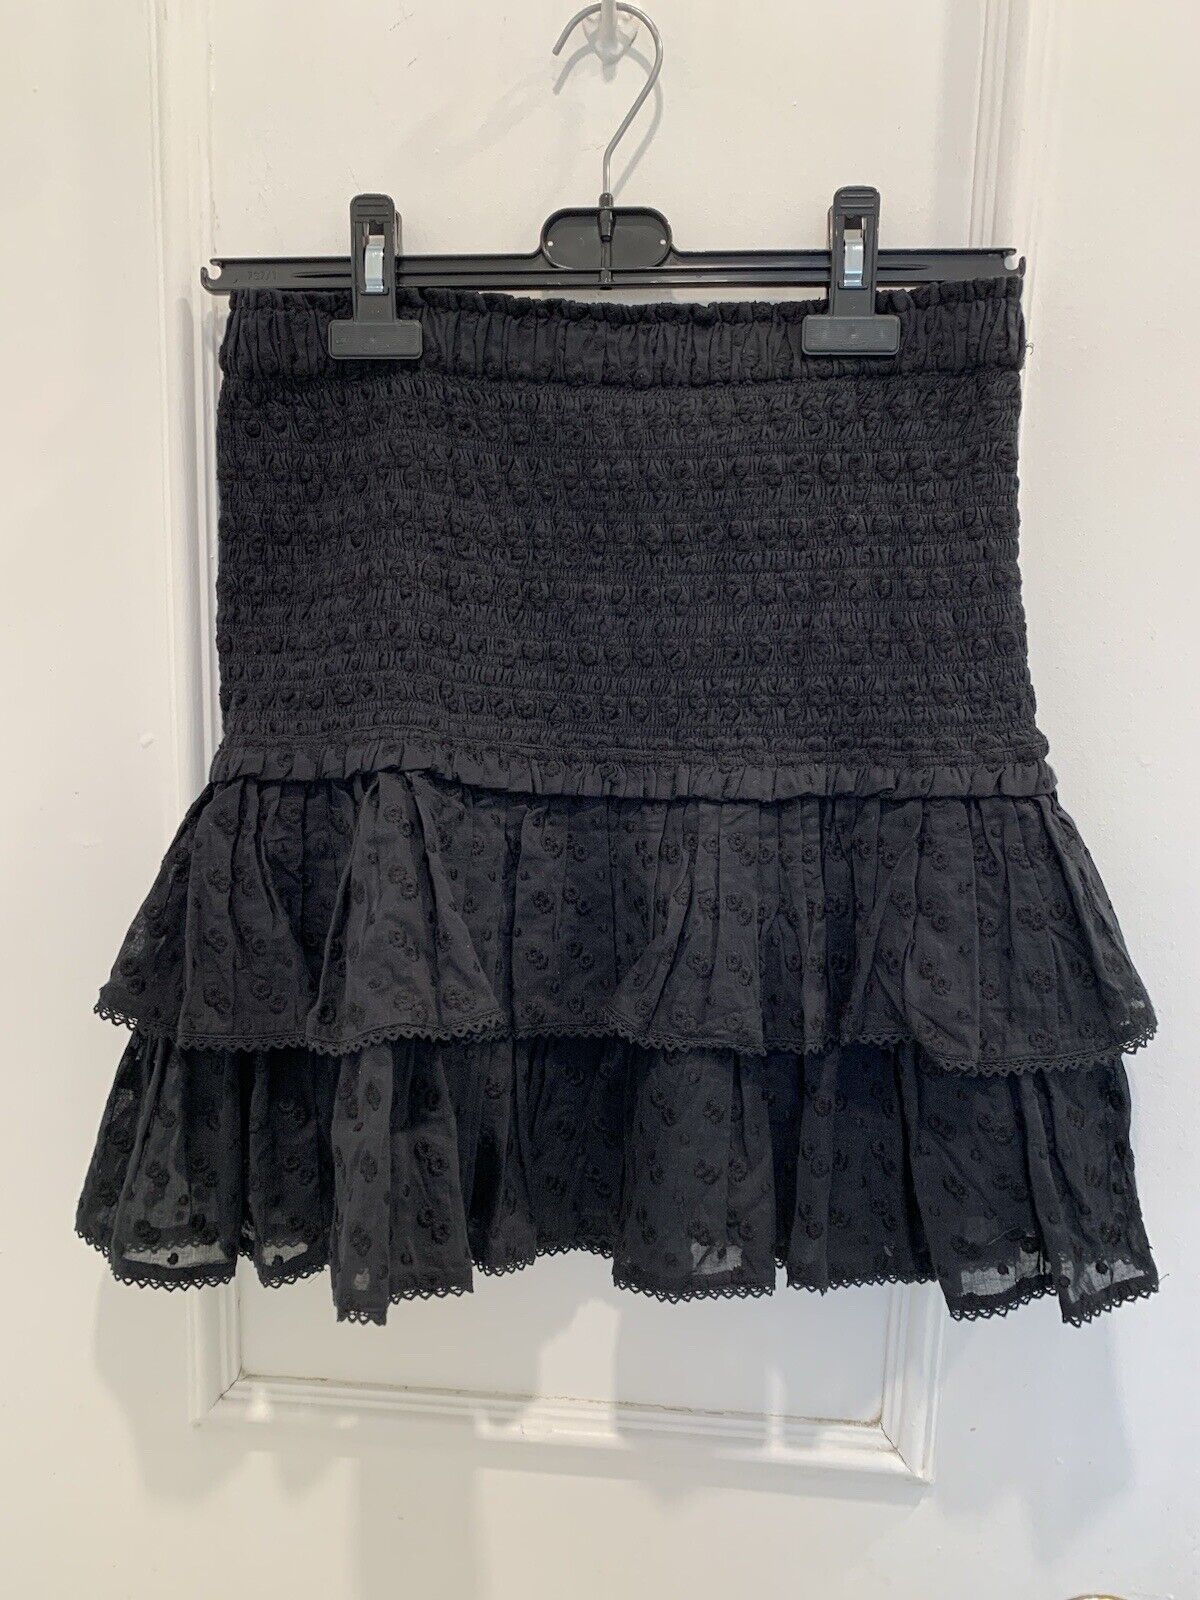 Isabel Marant Etoile Tinaomi Black Skirt. Size 38 (6 U.S.)